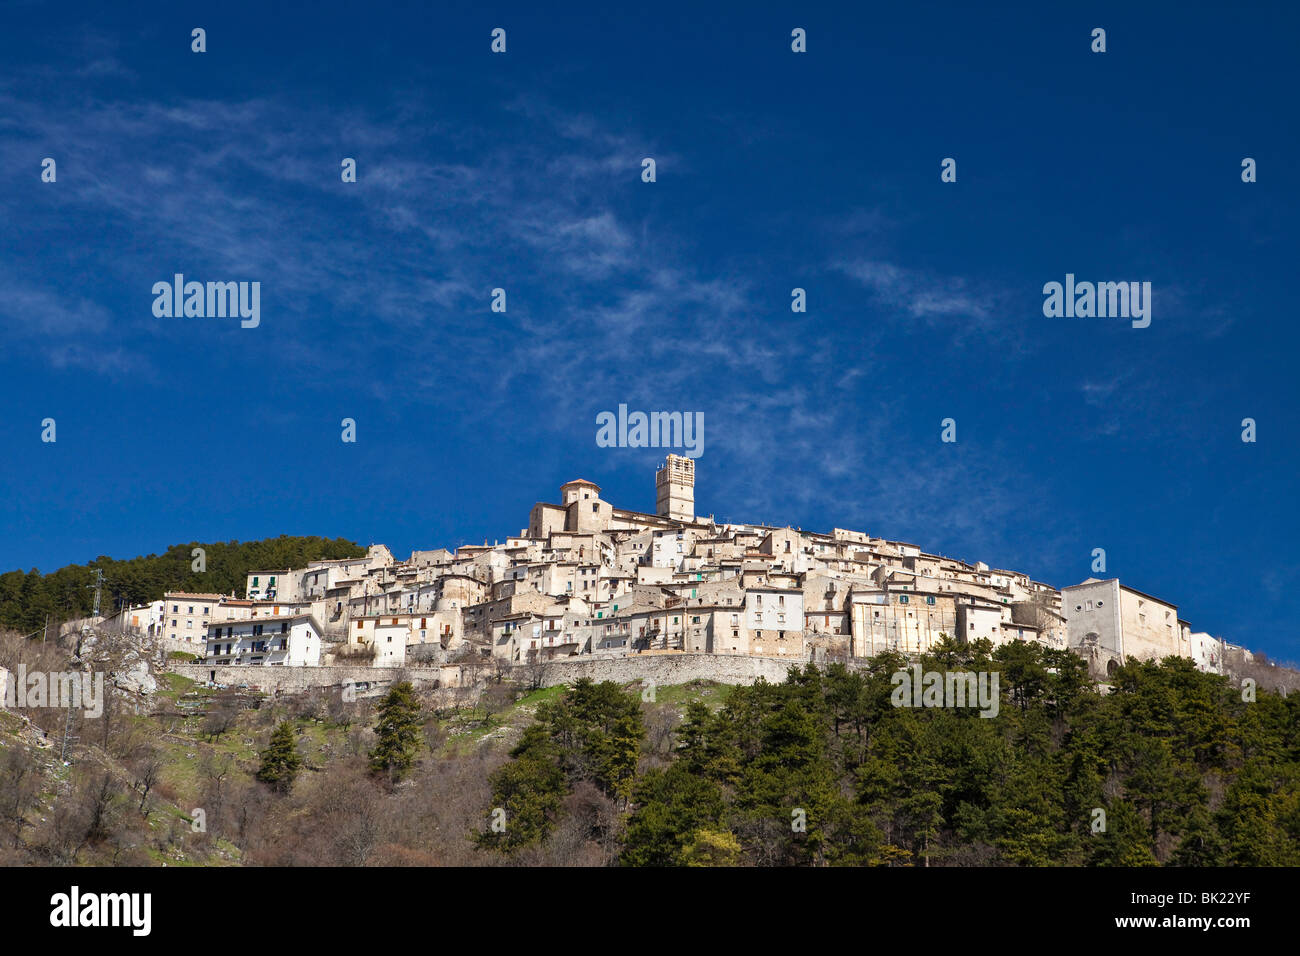 Castel Del Monte, Abruzzo, Italy Stock Photo - Alamy